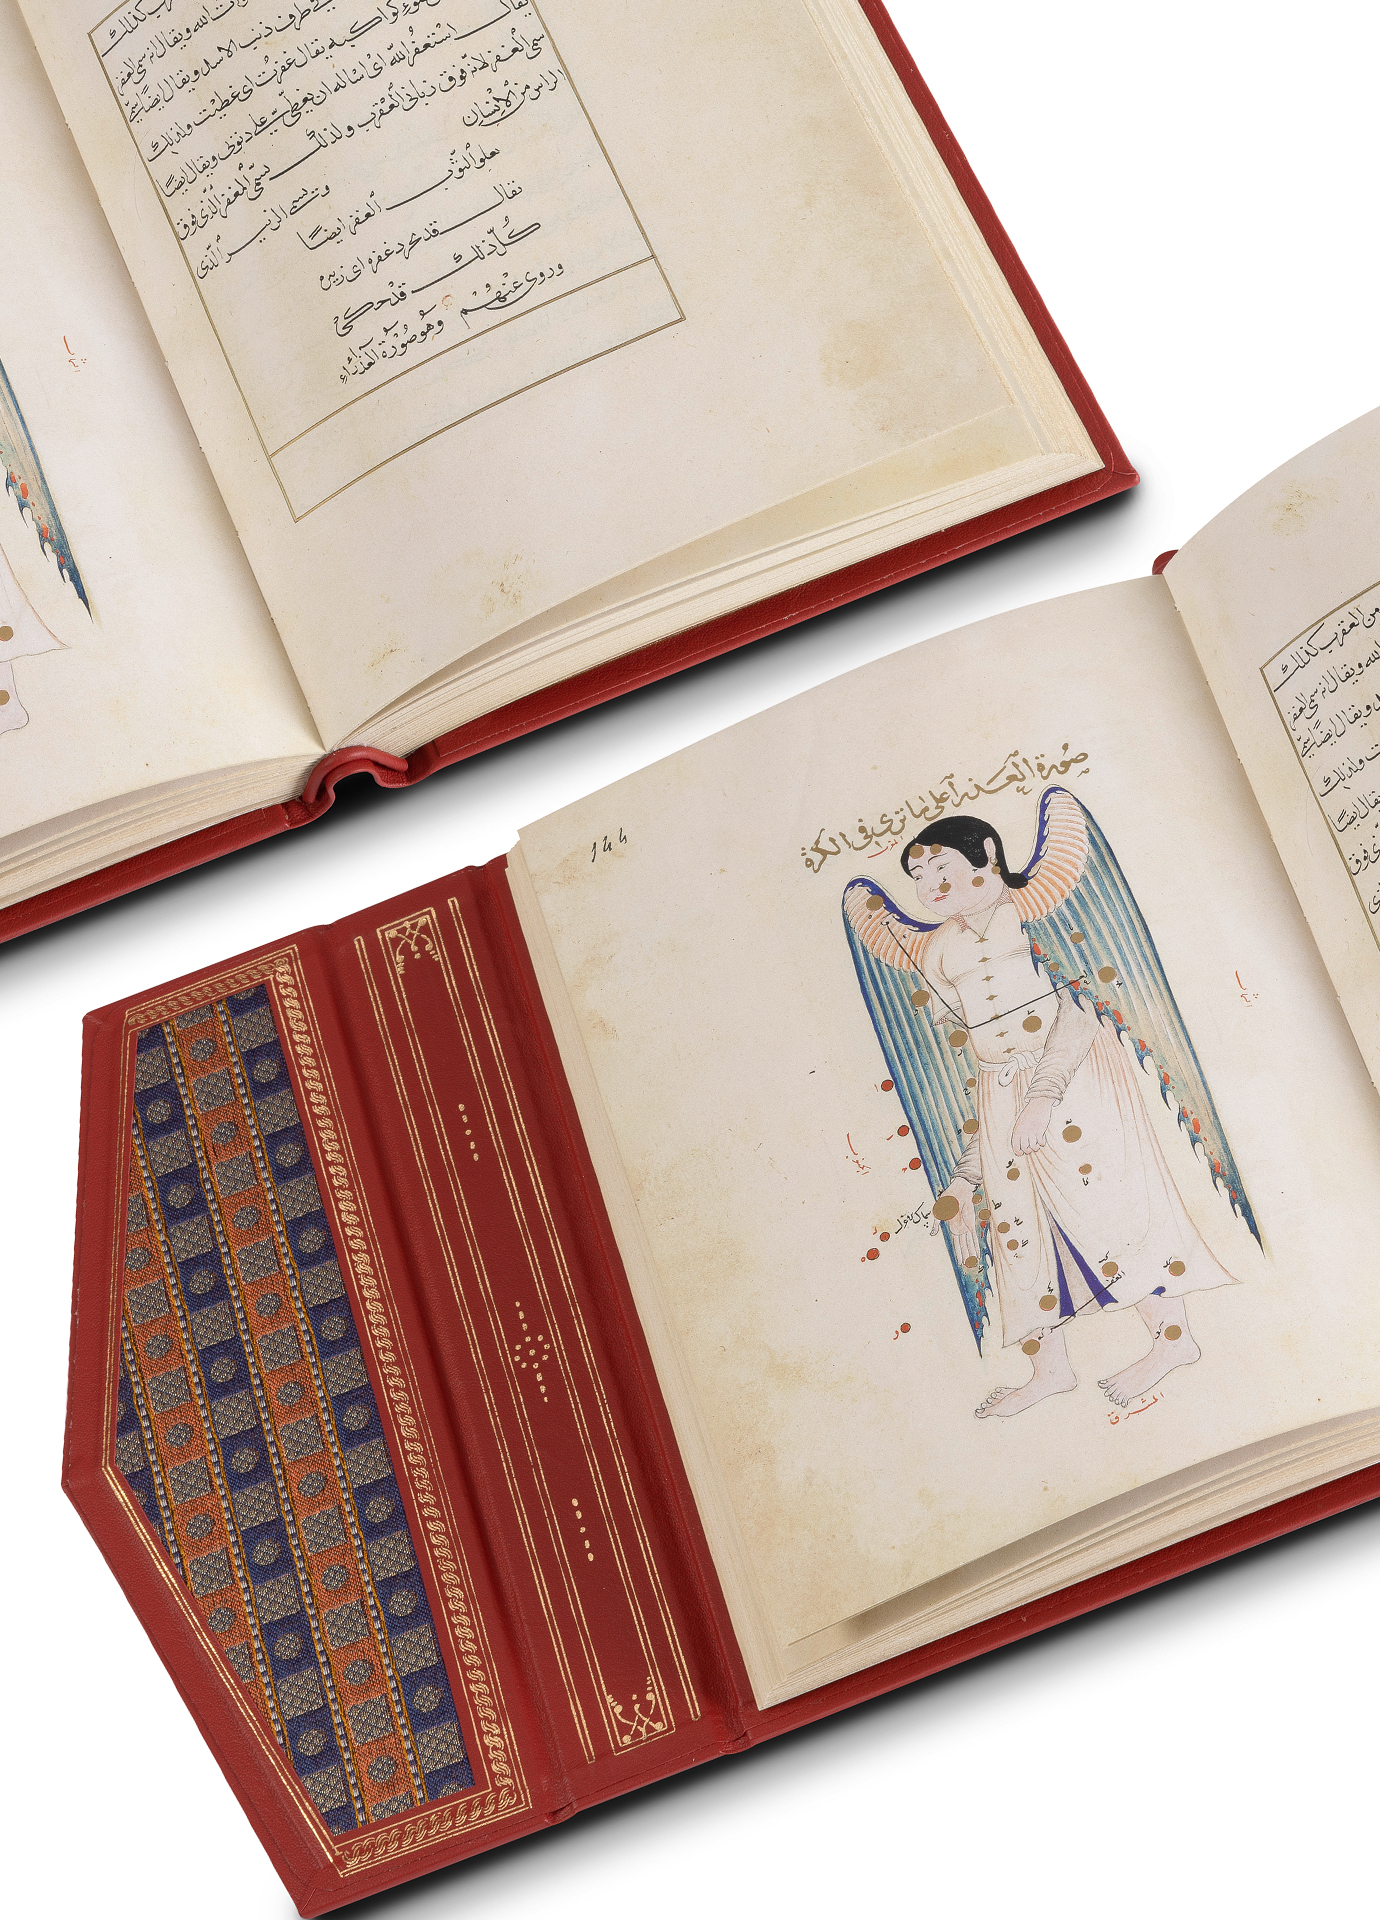 Aufgeschlagenes Faksimile-Ausgabe des Ulugh Begs. Es zeigt eine Doppelseite. Links ist eine Tabelle mit arabischen Schriftzeichen zu erkennen. Links sieht man das Sternbild der Jungfrau.